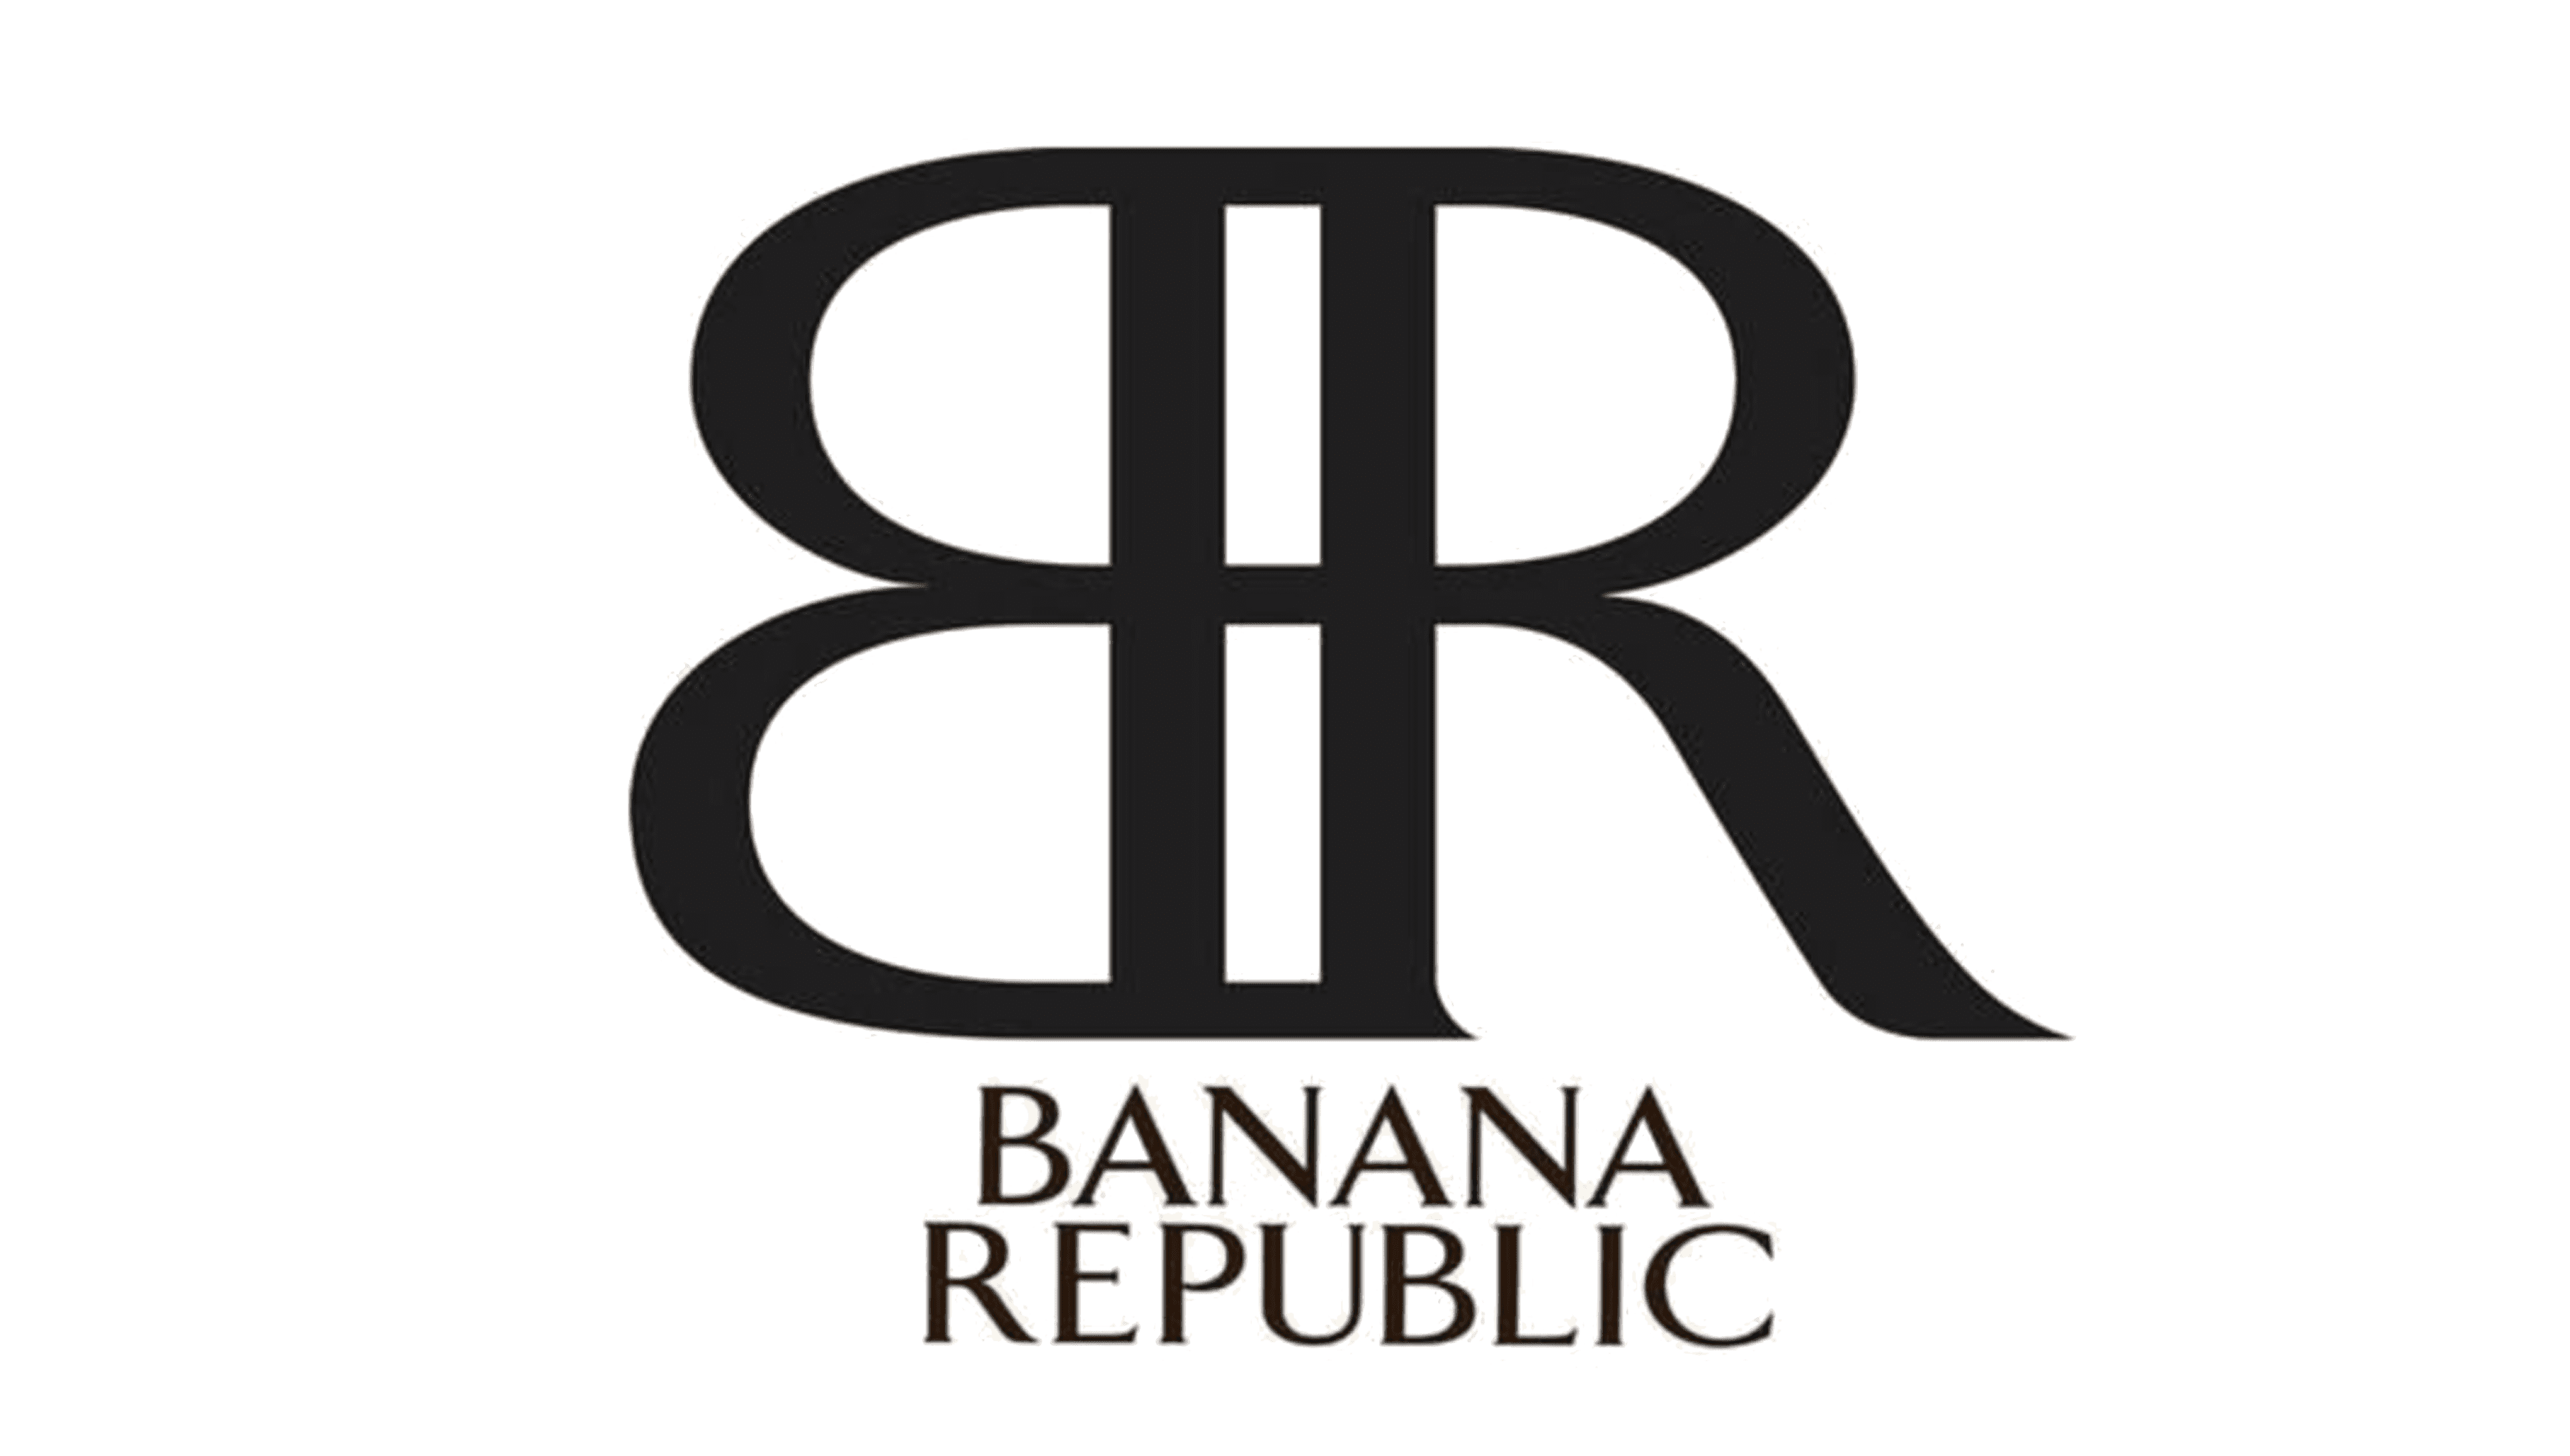 Banana-Republic-logo